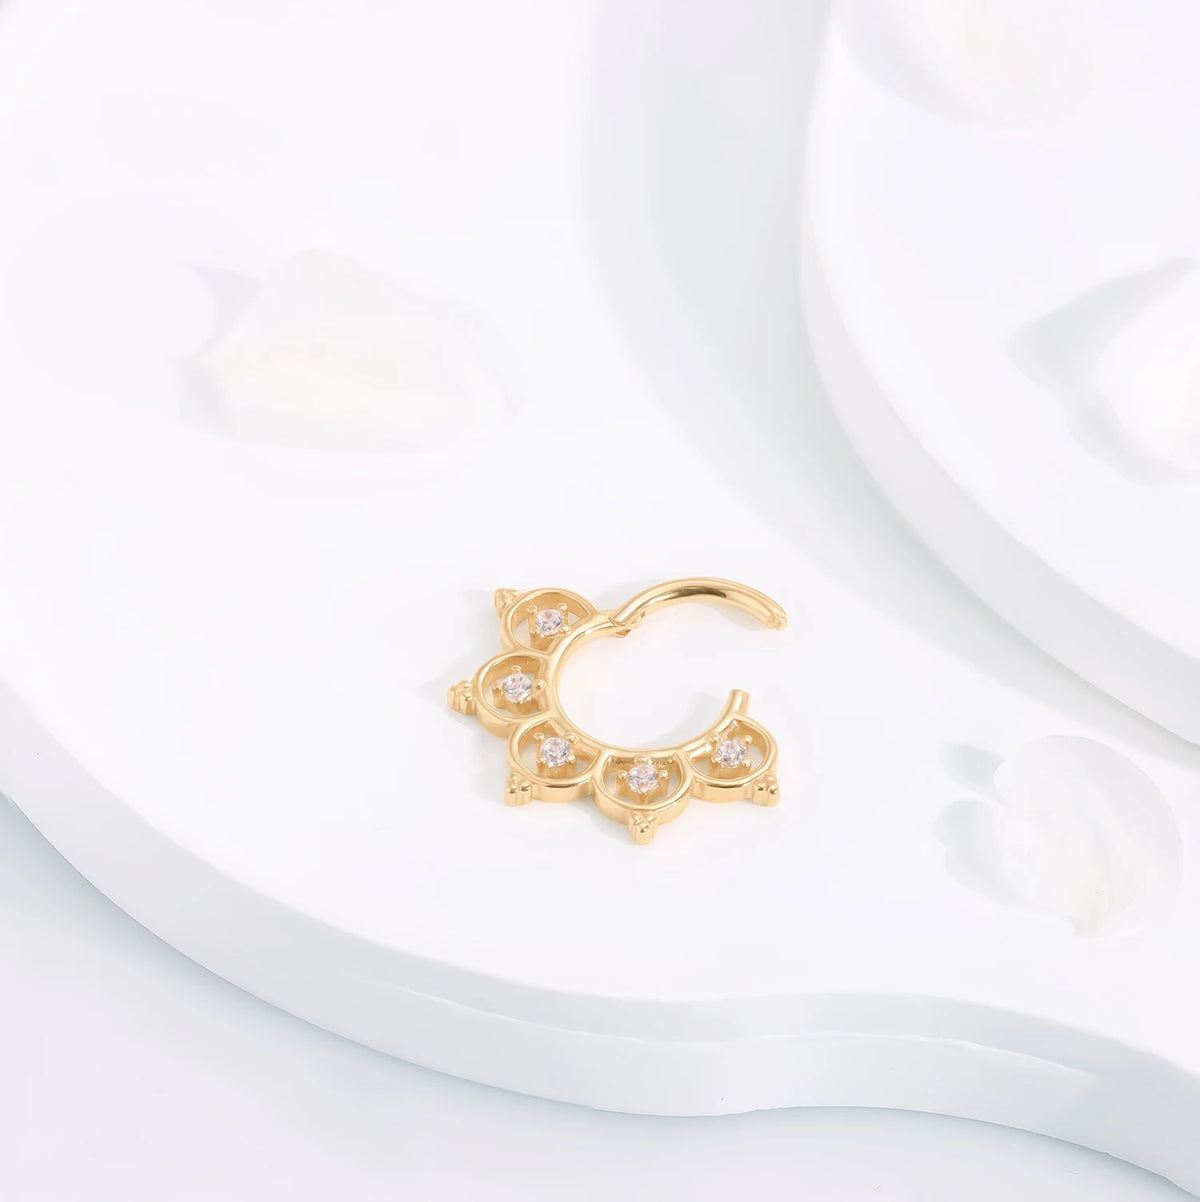 Clicker de septo em ouro 14K, brinco daith muito sofisticado e exclusivo, anel clicker de segmento articulado, anel de nariz